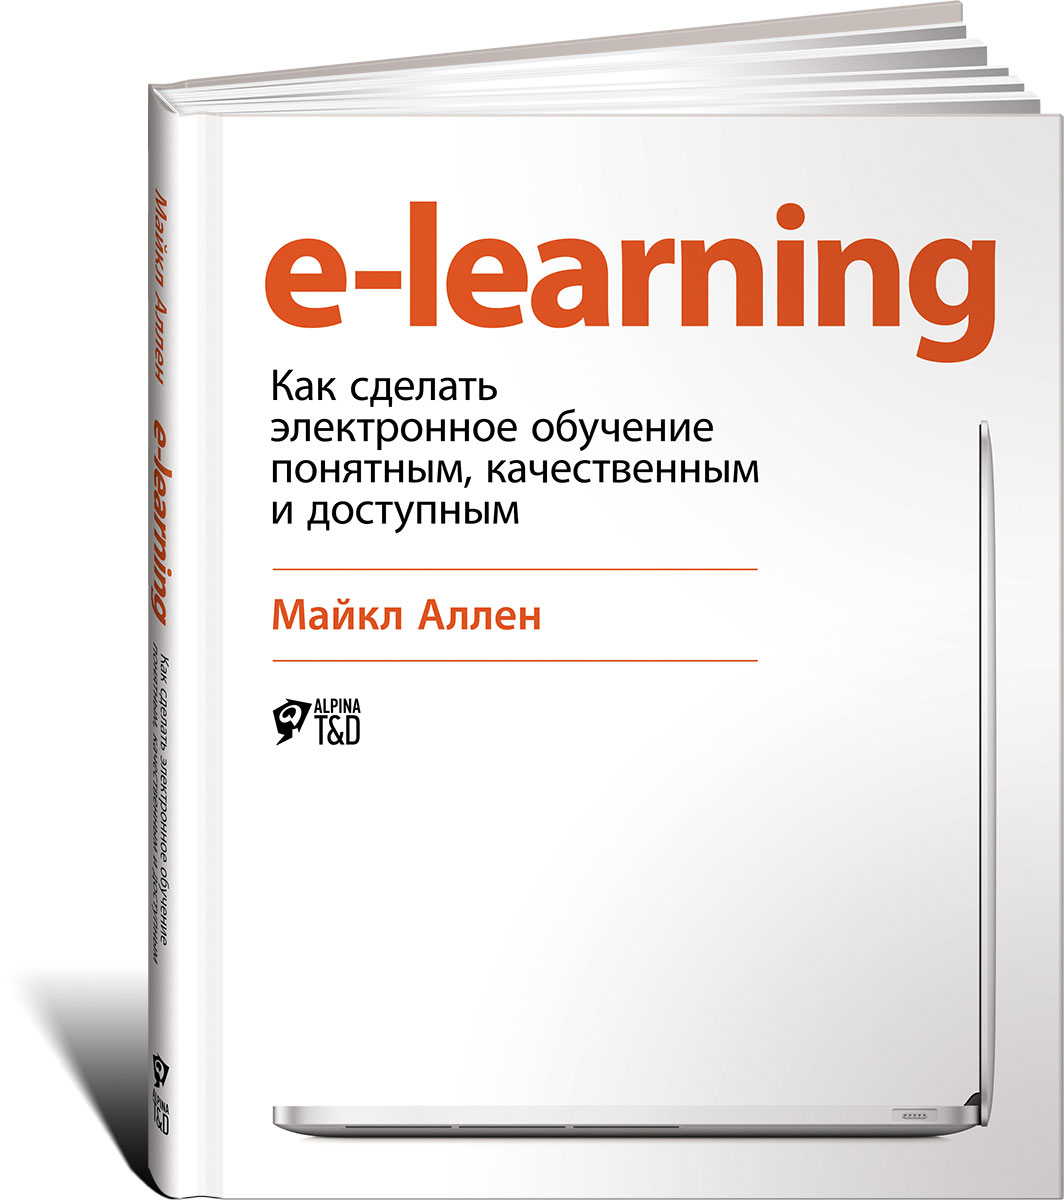 E-Learning: Как сделать электронное обучение понятным, качественным и доступным. Майкл Аллен